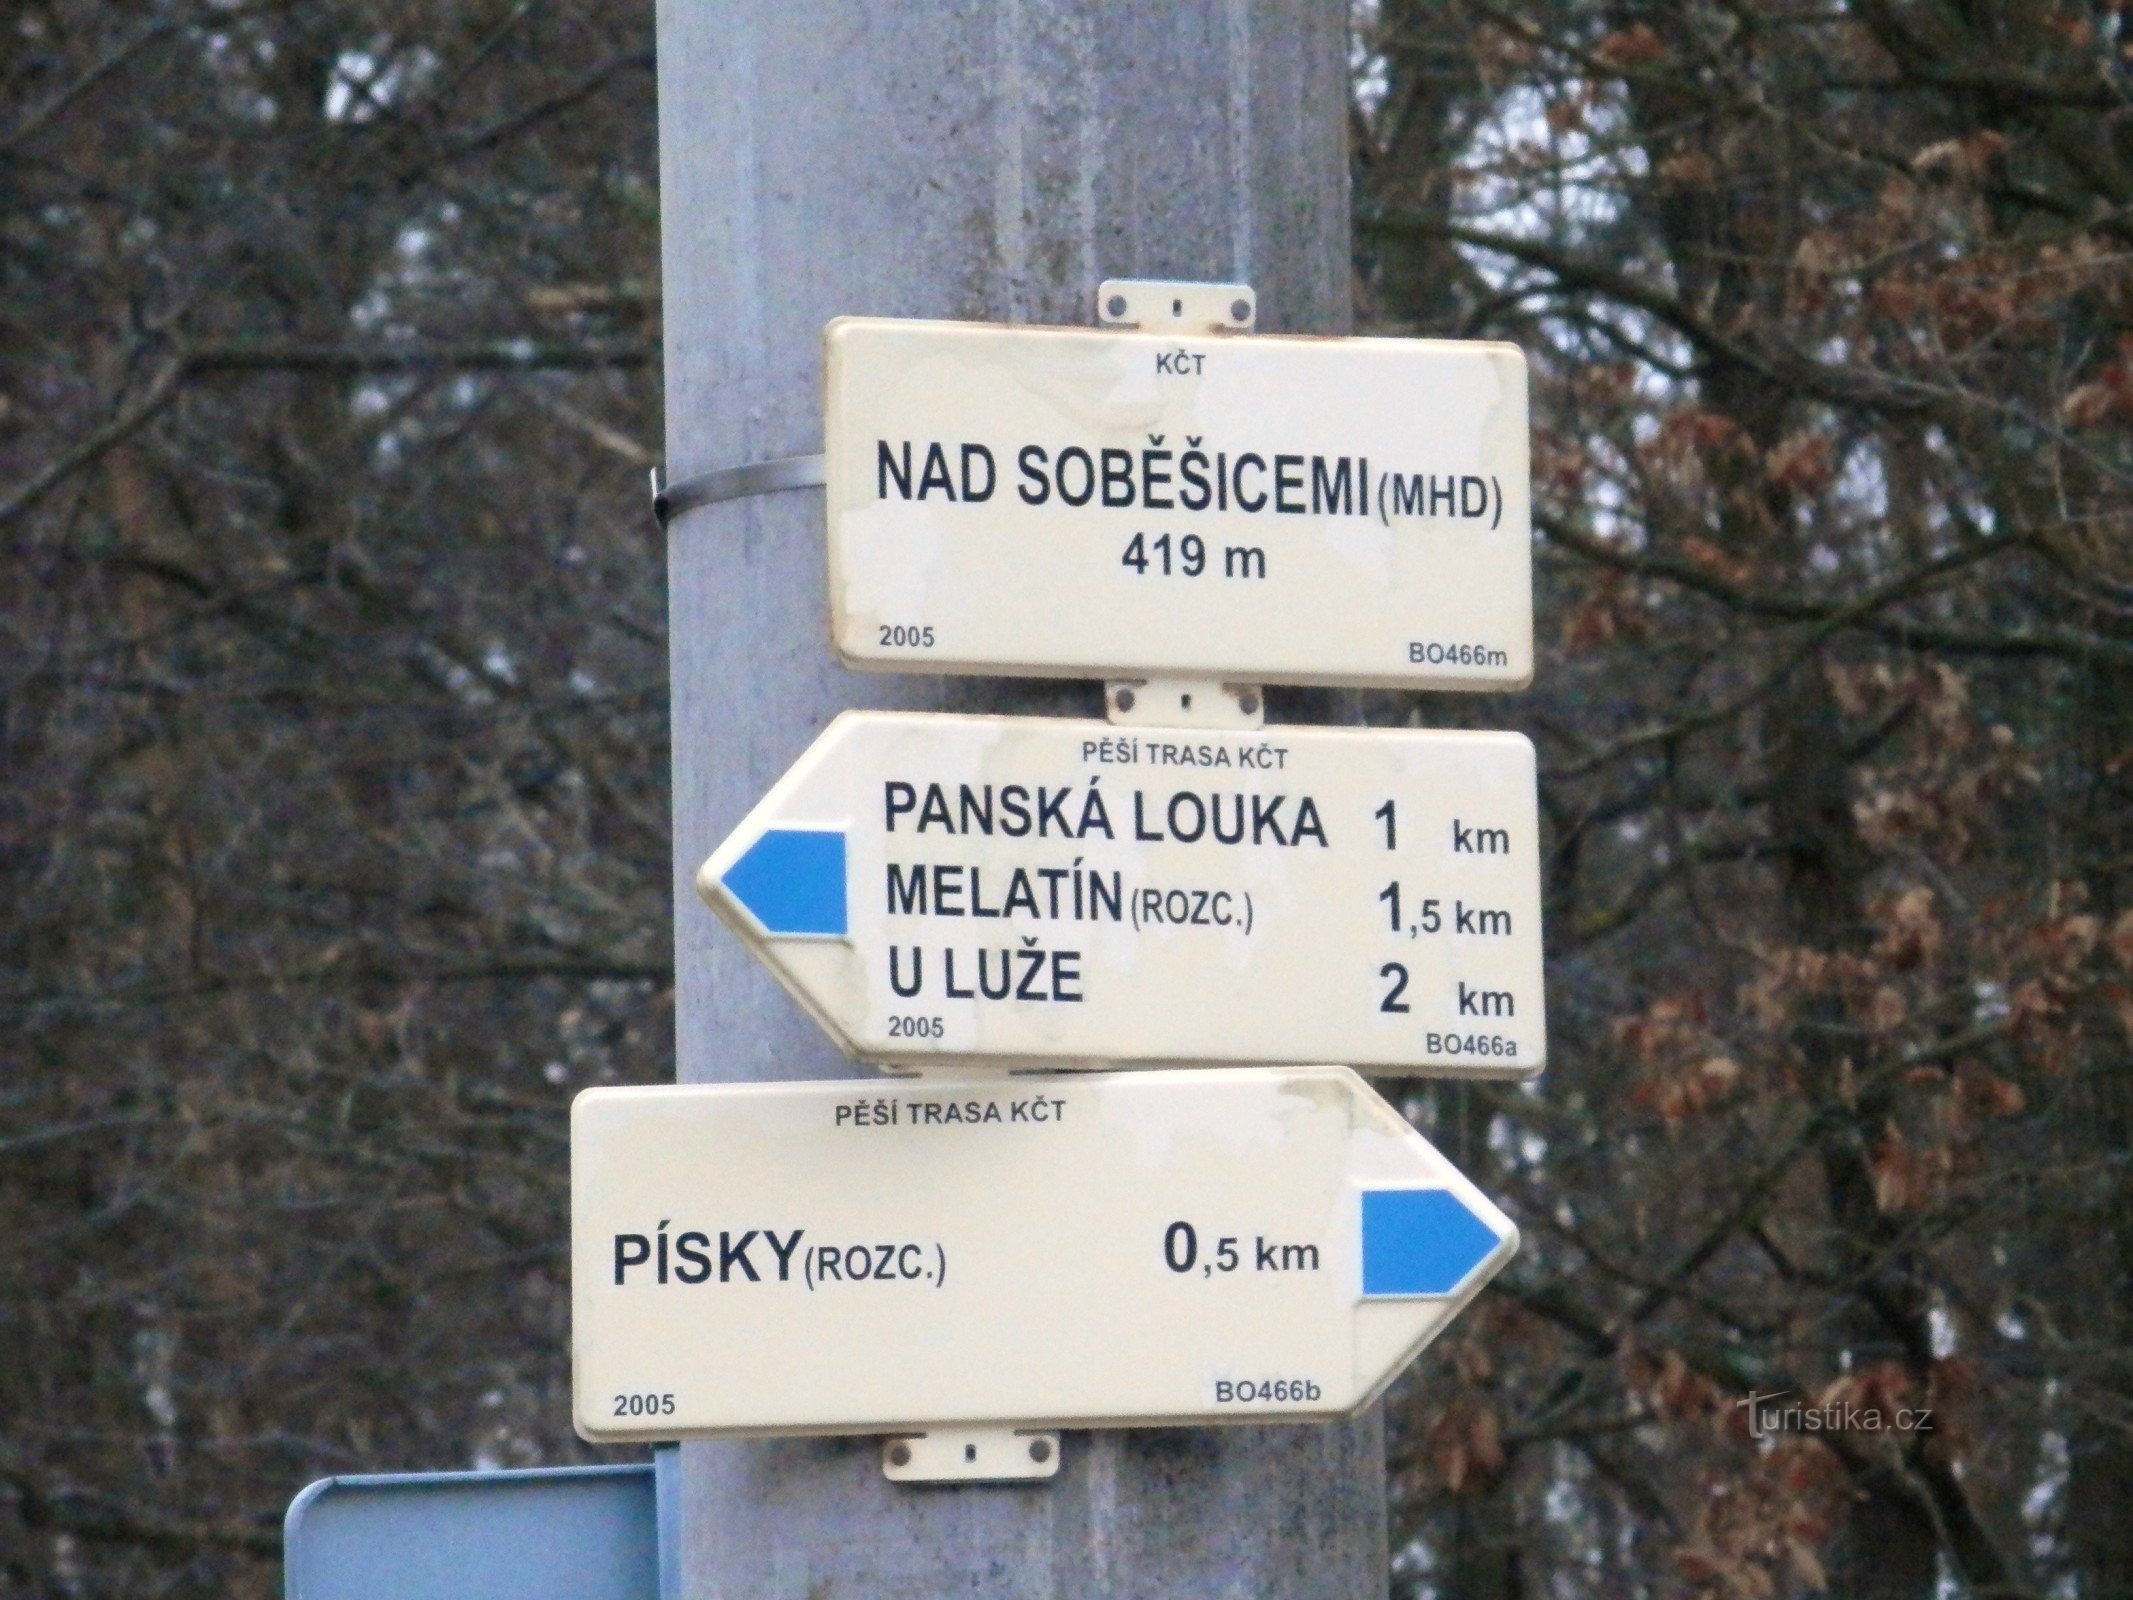 Nad Soběšicemi (transport public) - intersecție de trasee turistice marcate